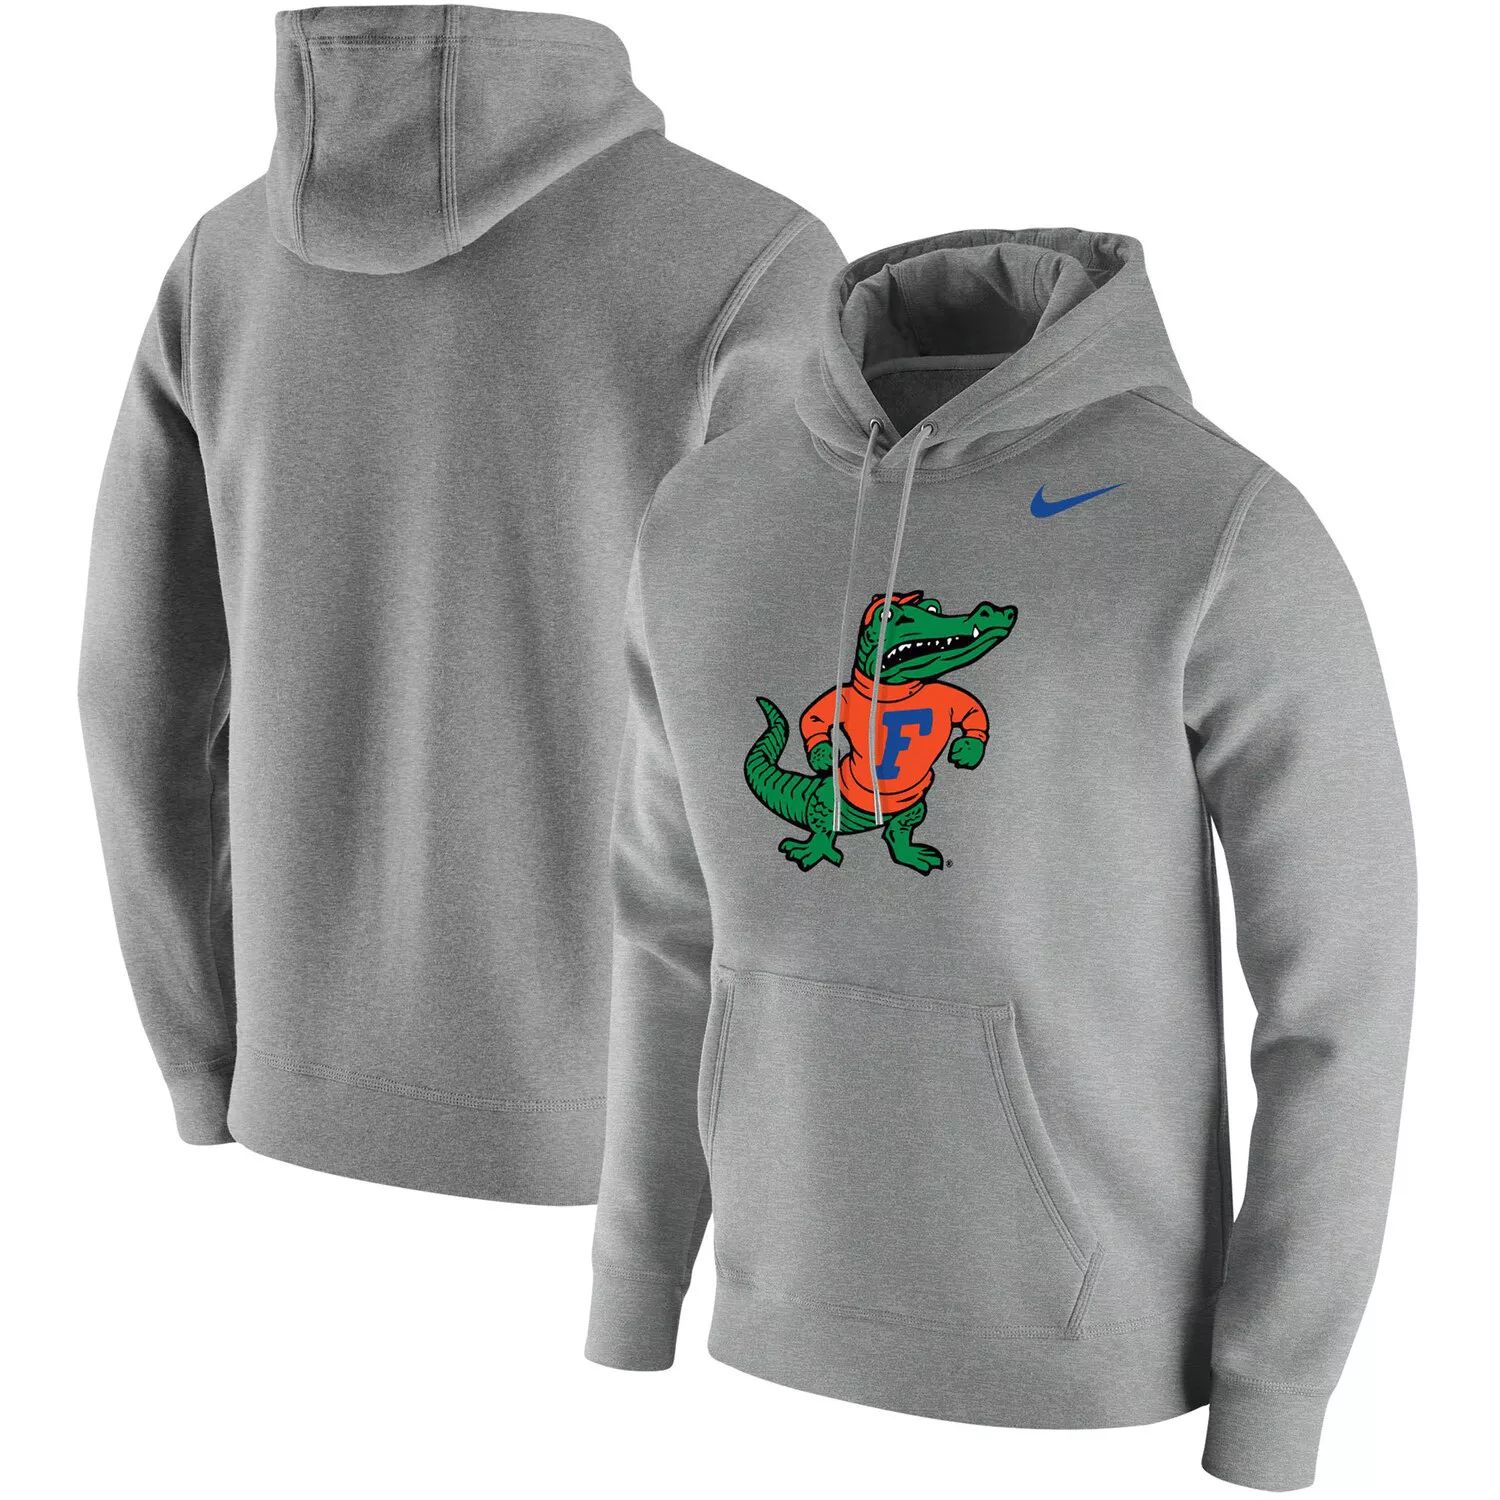 Мужской серый пуловер с капюшоном и логотипом Florida Gators Vintage School Nike